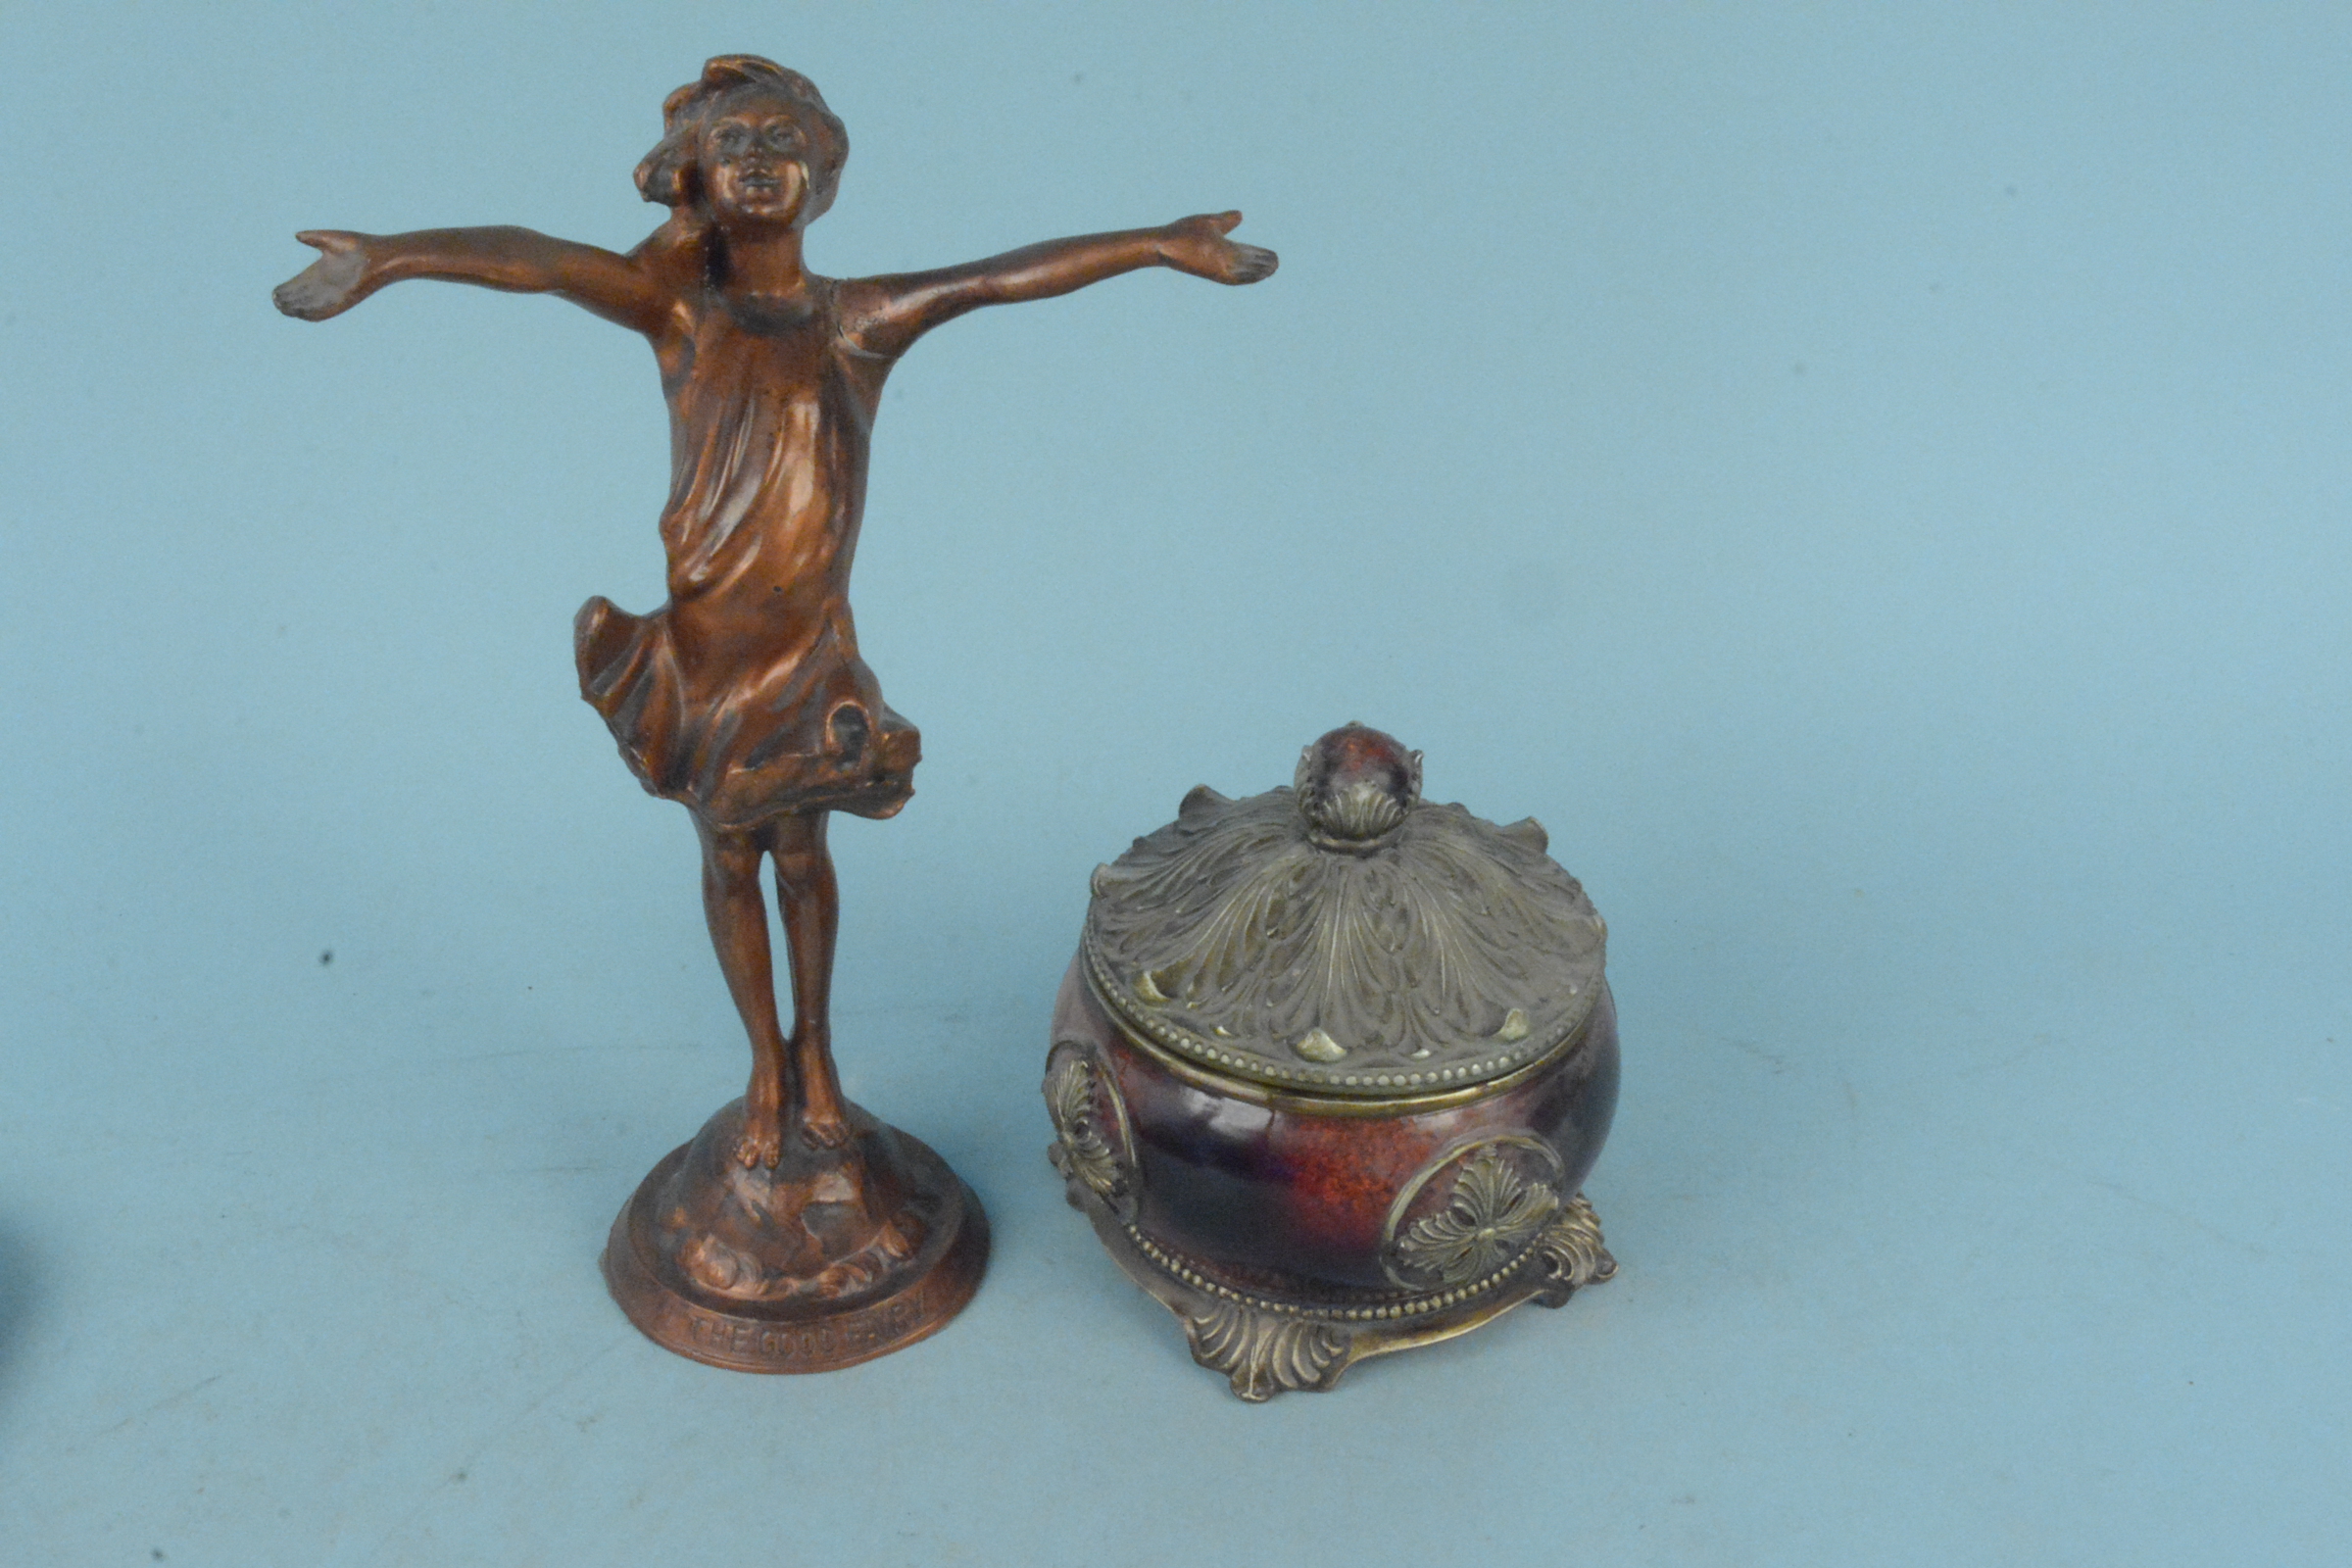 A spelter figurine 'The Good Fairy', impressed JMR 1916 (Jessie McCutcheon Raleigh), - Bild 3 aus 3